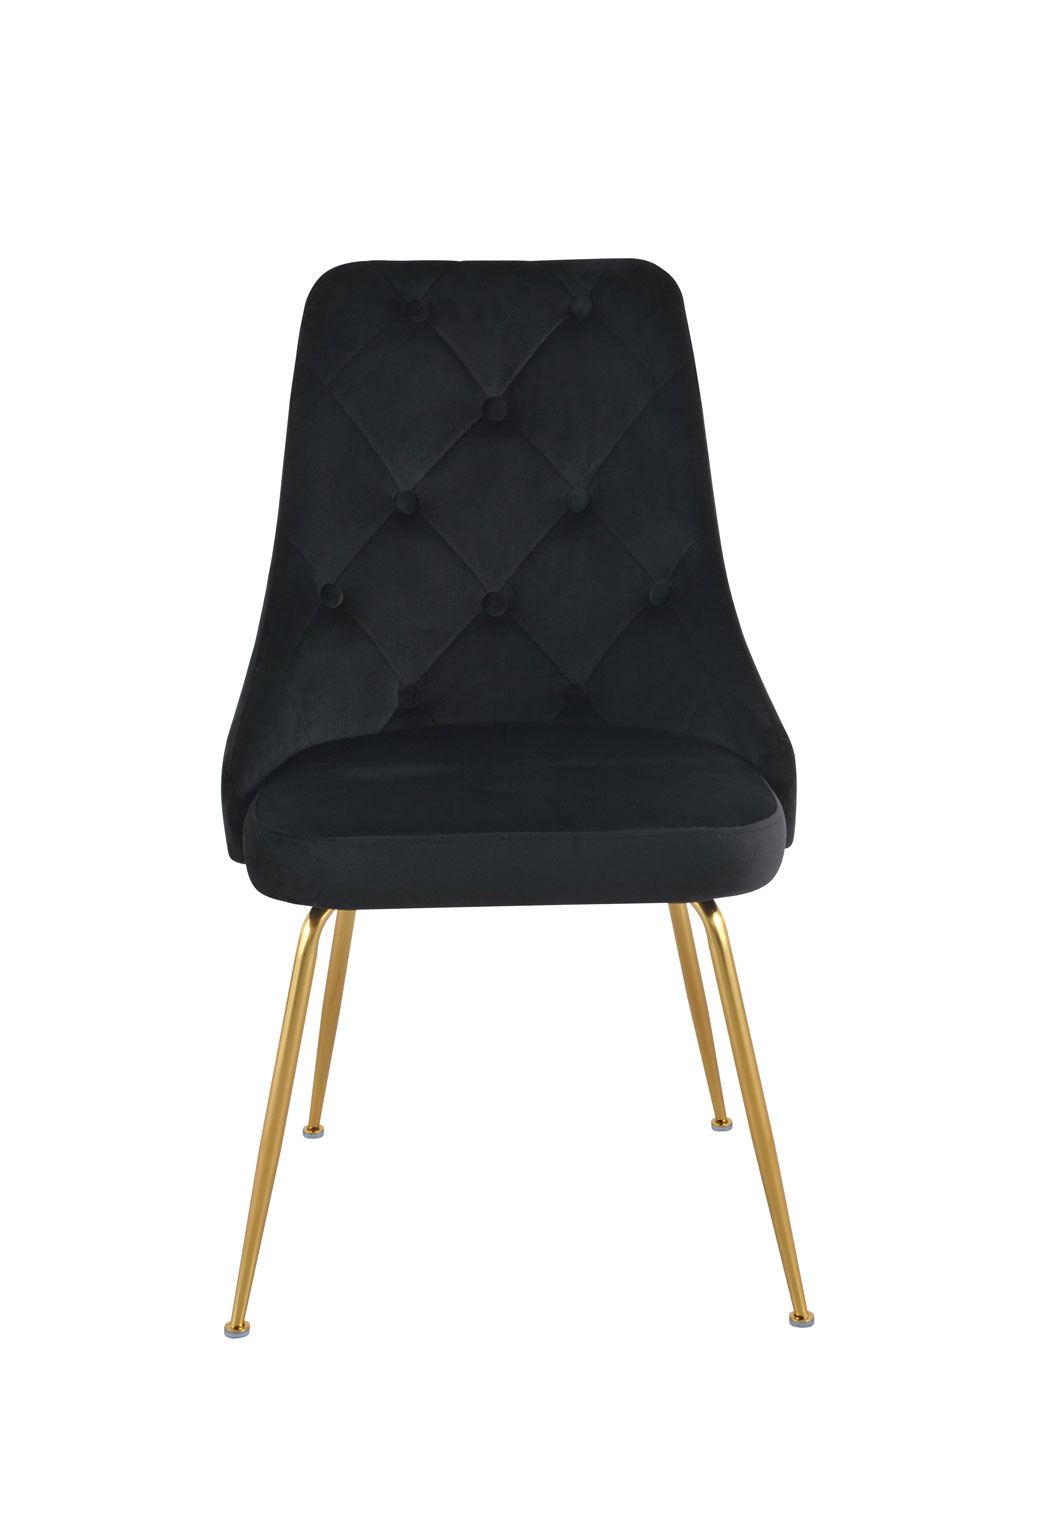 Plumeria Side Chair - Black, Gold